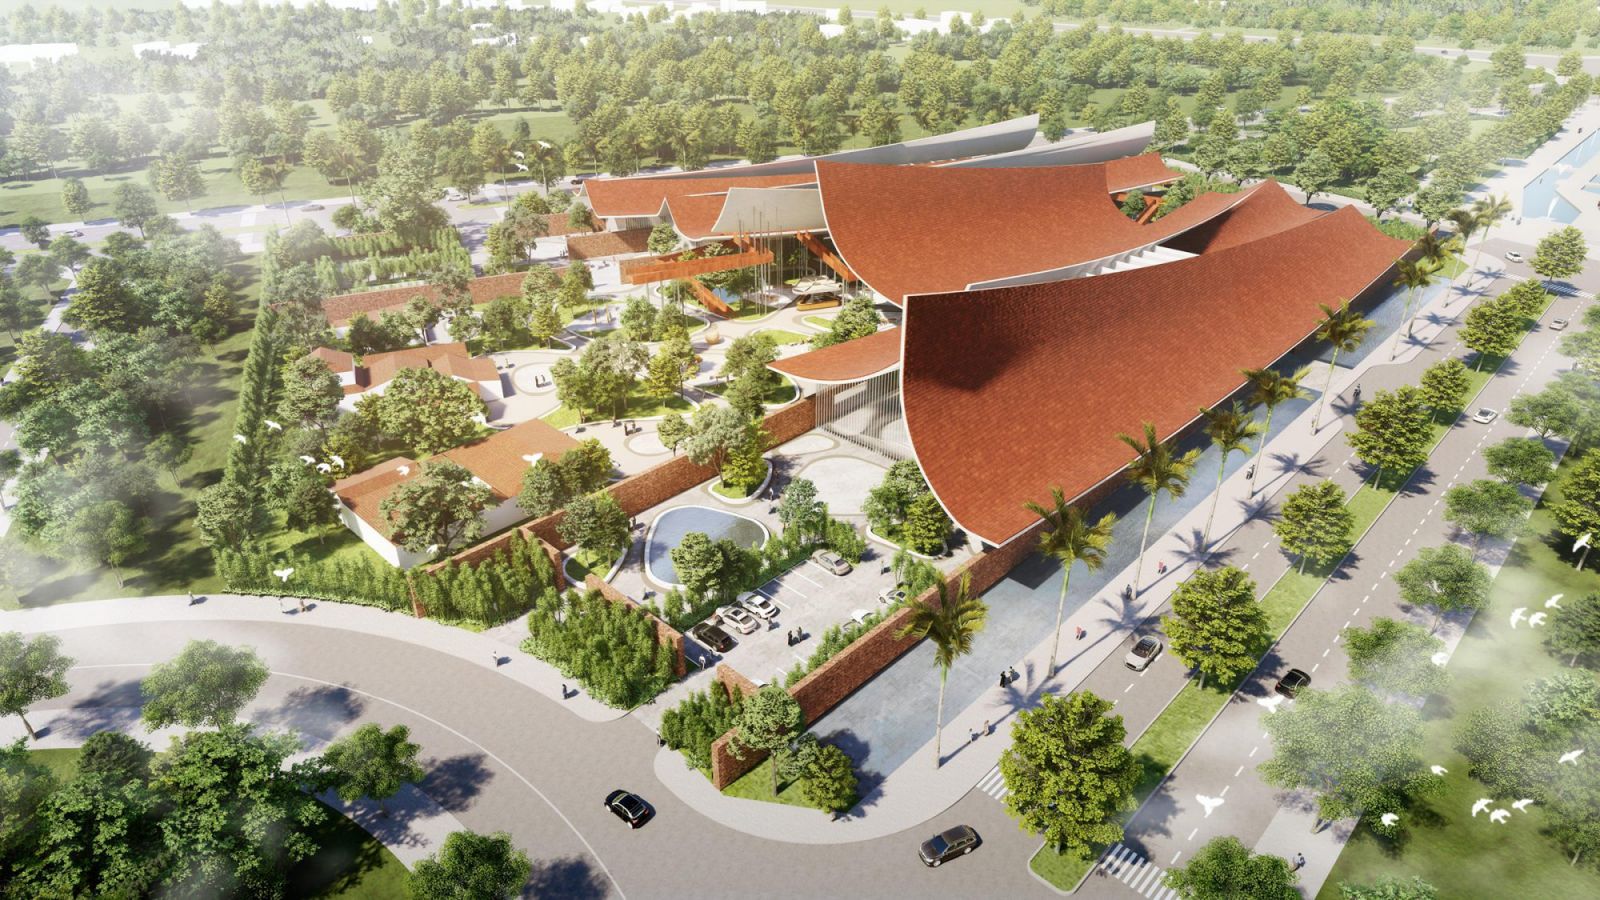 Thiết kế “độc lạ” công trình 13.000 m2 ở Long An đạt giải lớn về kiến trúc thế giới